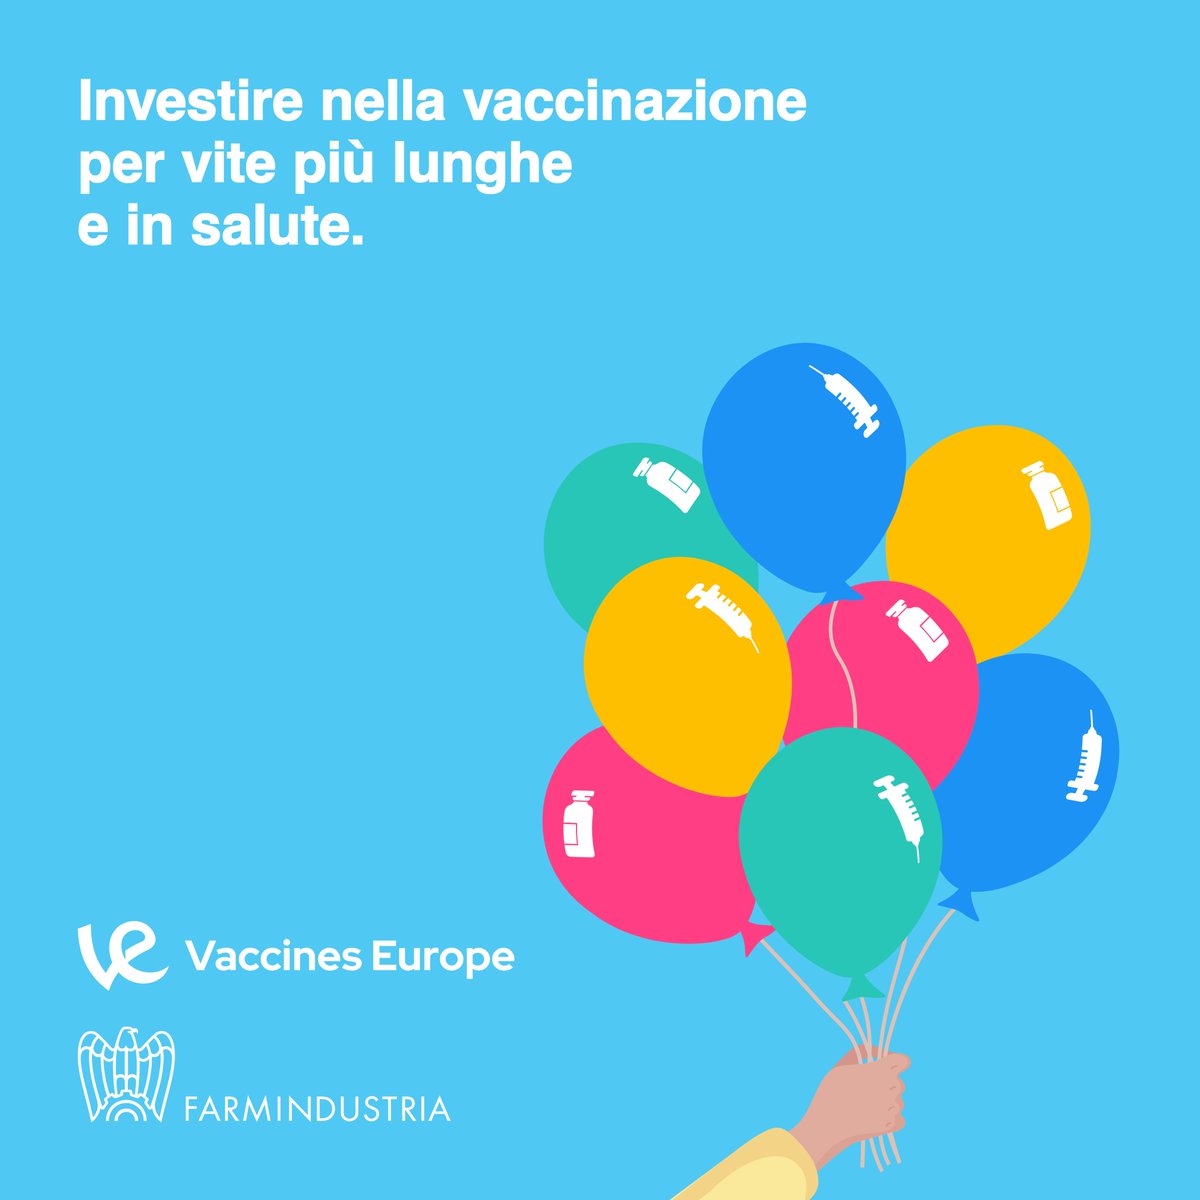 Negli ultimi venti anni, l’Unione Europea è stata leader nello sviluppo e produzione di vaccini, ospitando il 22% di sperimentazioni cliniche sui vaccini a livello globale e molti centri di ricerca delle più importanti imprese farmaceutiche al mondo. @vaccineseurope Scopri di